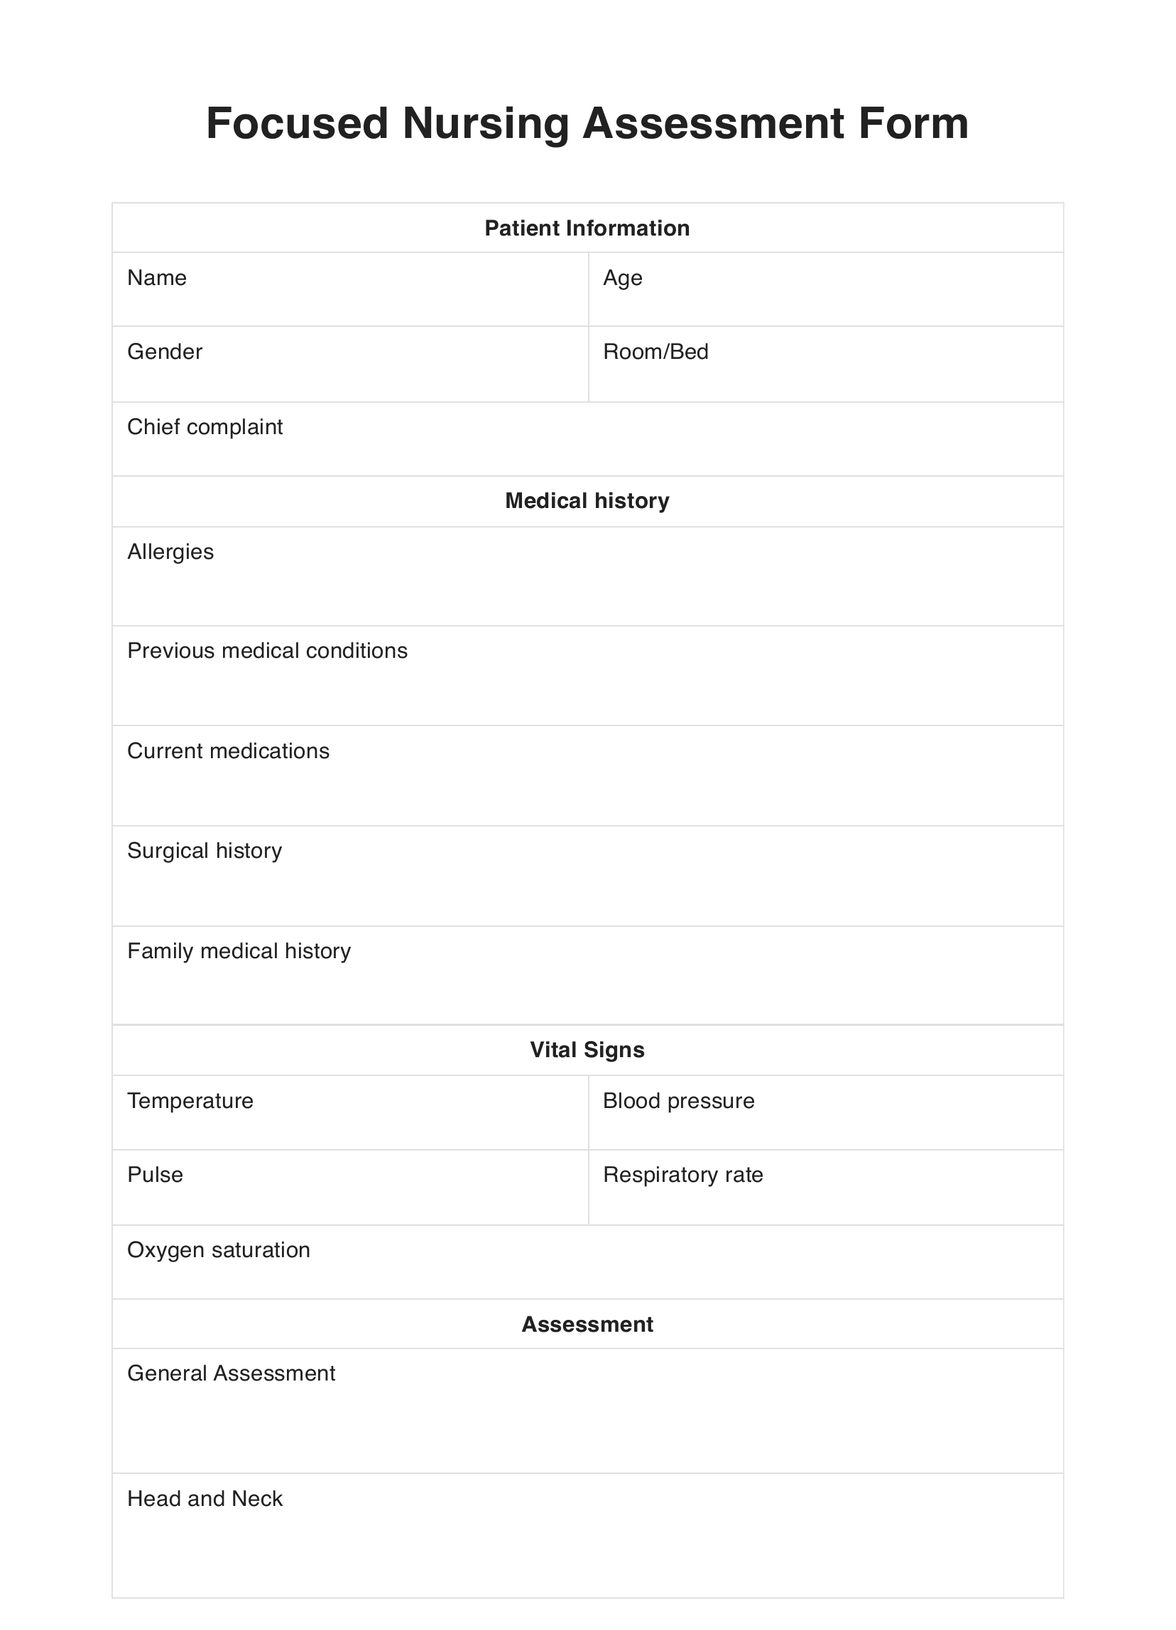 Focused Nursing Assessment PDF Example